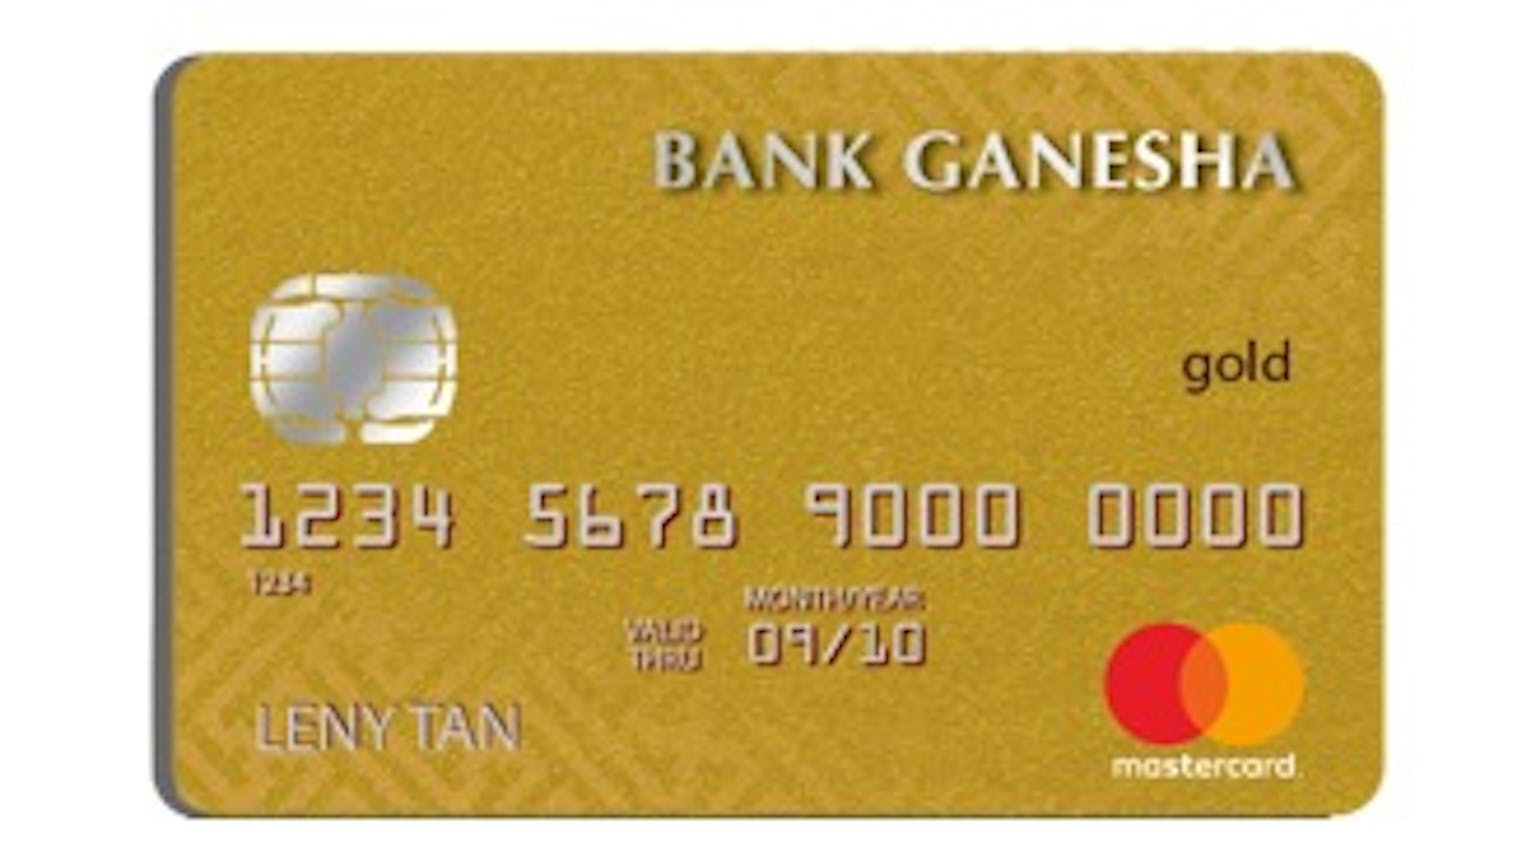 Bank Ganesha Mastercard Gold (Sudah Tidak Tersedia)